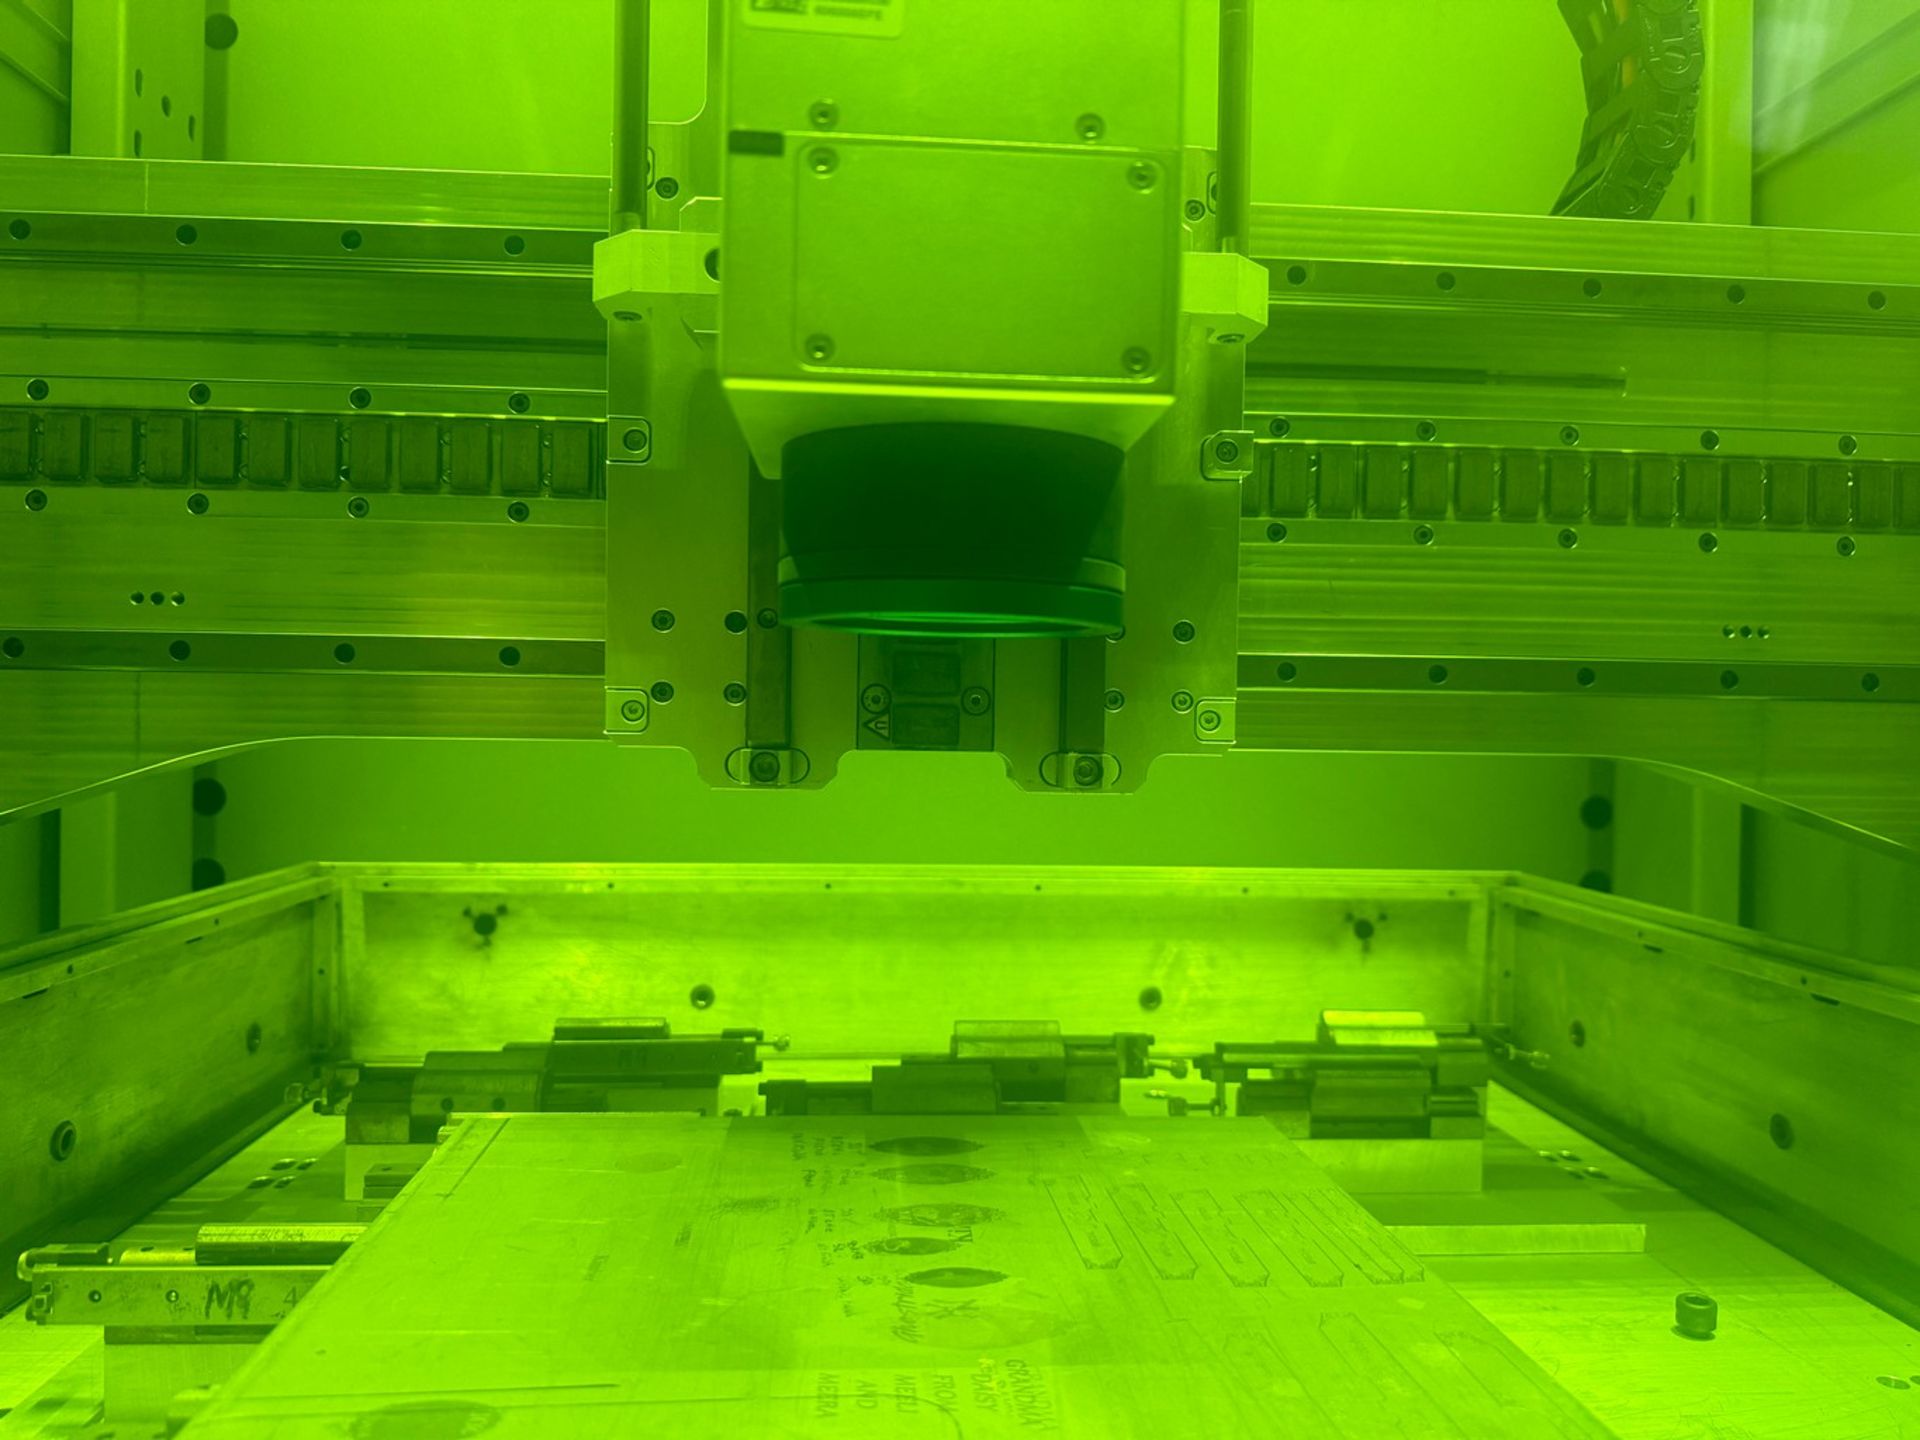 OR-Laser Orlas Portal 1000 CNC Laser Engraving Machine - Image 5 of 9